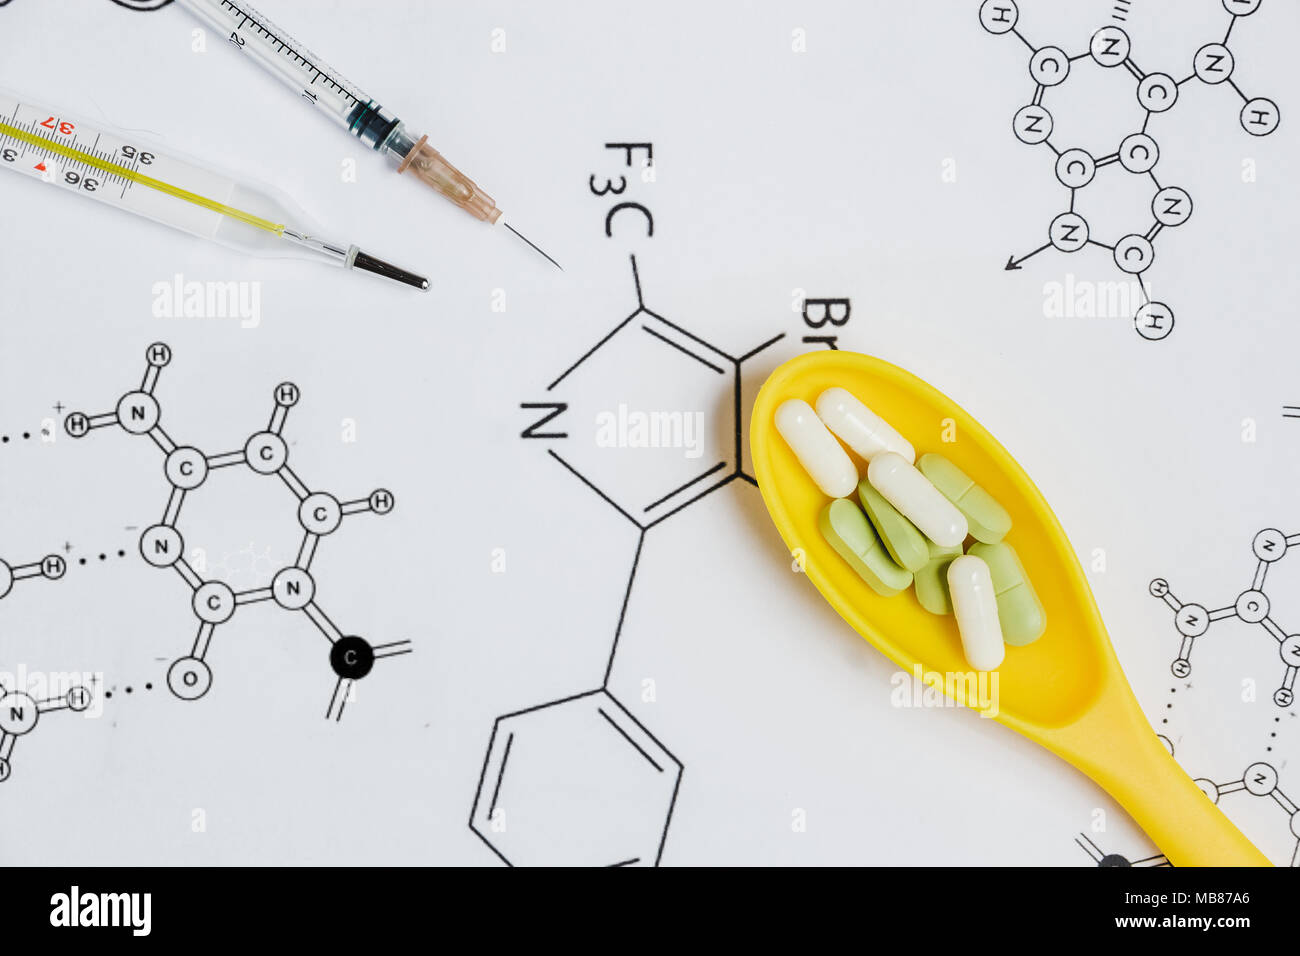 Assortimento di pillole e capsule in giallo cucchiaio, siringa, termometro su sfondo bianco con formula chimica. Foto Stock